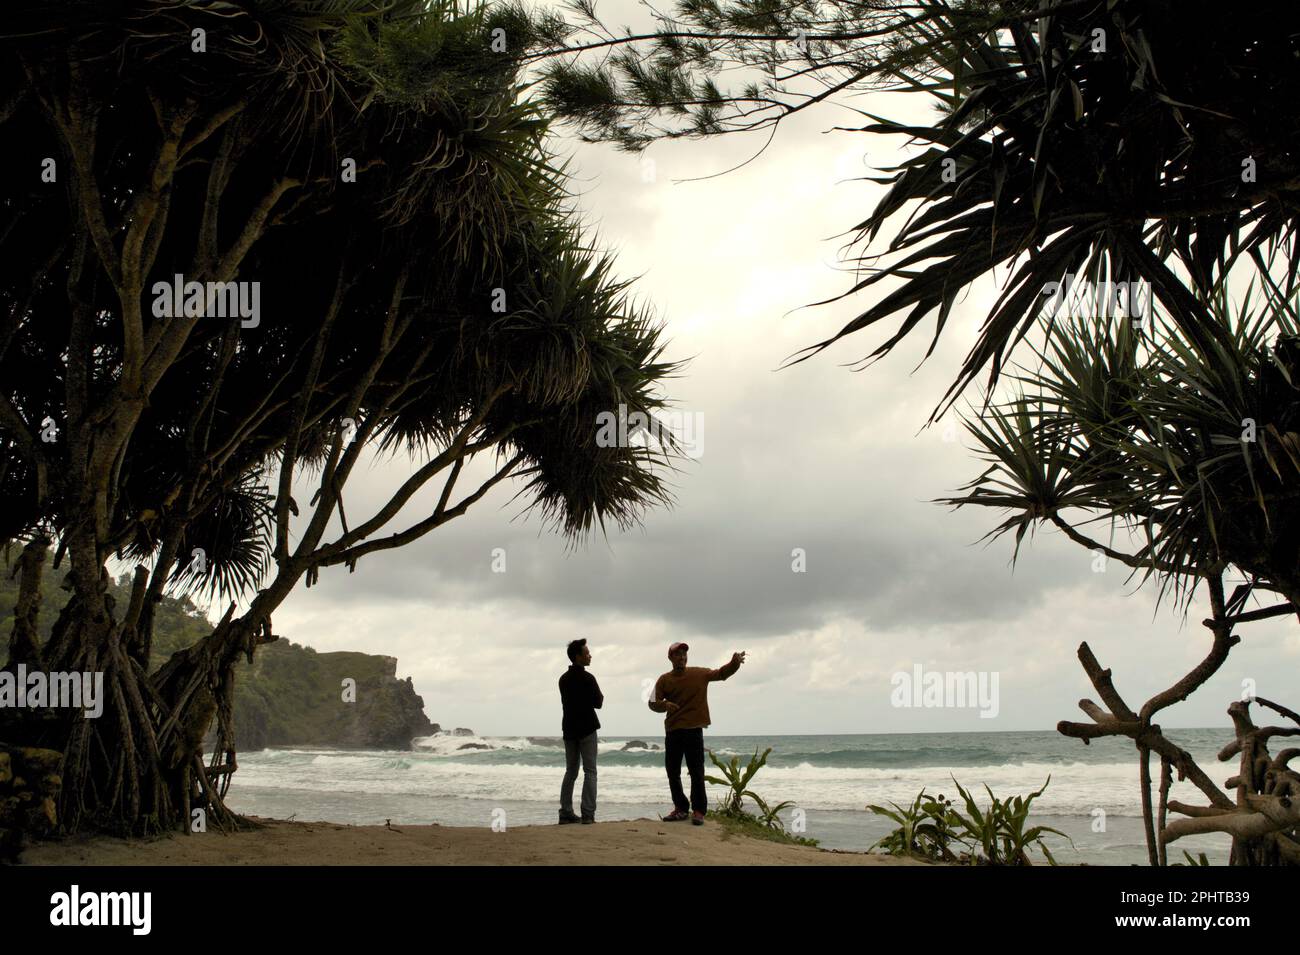 Kletterer unterhalten sich, während sie bei der Ankunft am Sandstrand stehen, im Hintergrund eines Kalksteinhügels und des Indischen Ozeans in einem Küstengebiet namens Siung Beach, das sich administrativ in Duwet, Purwodadi, Tepus, Gunungkidul, Yogyakarta, Indonesien. Der Strand ist eines der beliebten Erholungsziele an der Küste mit Blick auf den Indischen Ozean in der besonderen Region Yogyakarta. Für Kletterbegeisterte bietet Siung Beach mehr als 200 Sportrouten, die bereits auf den Kalksteinhügeln angelegt sind. Stockfoto